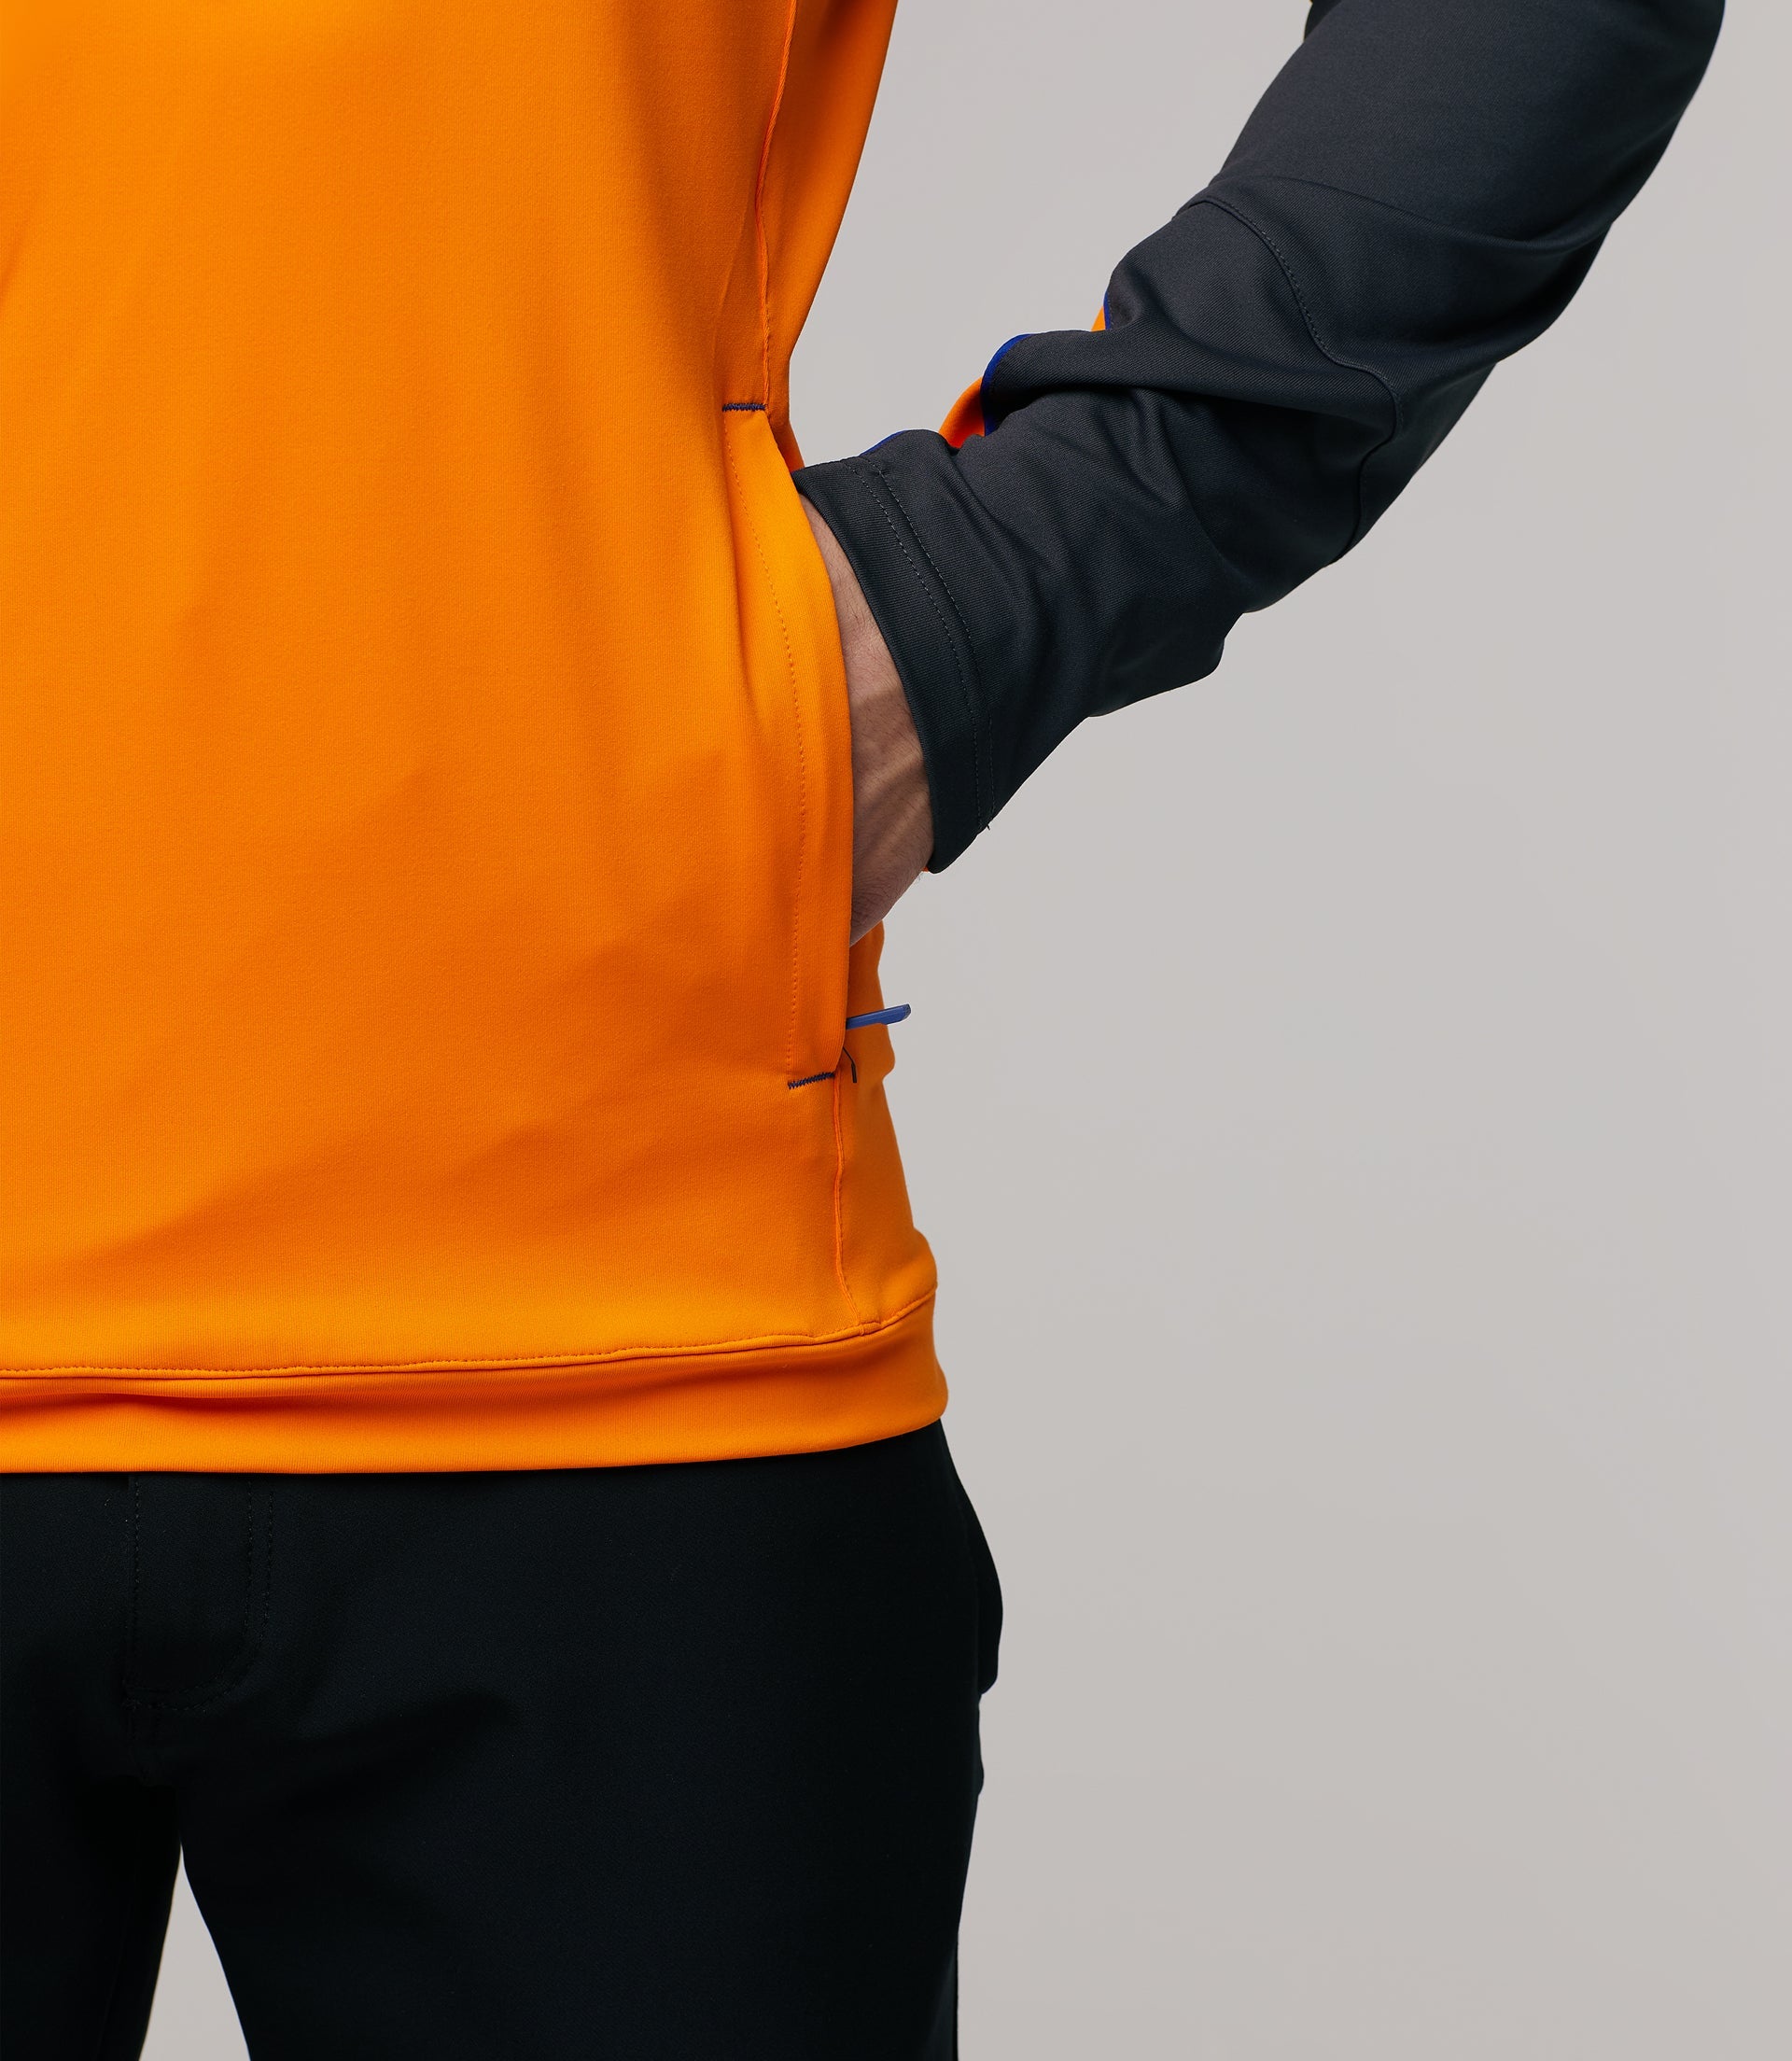 McLaren F1 Men's Team Hooded Sweatshirt Orange